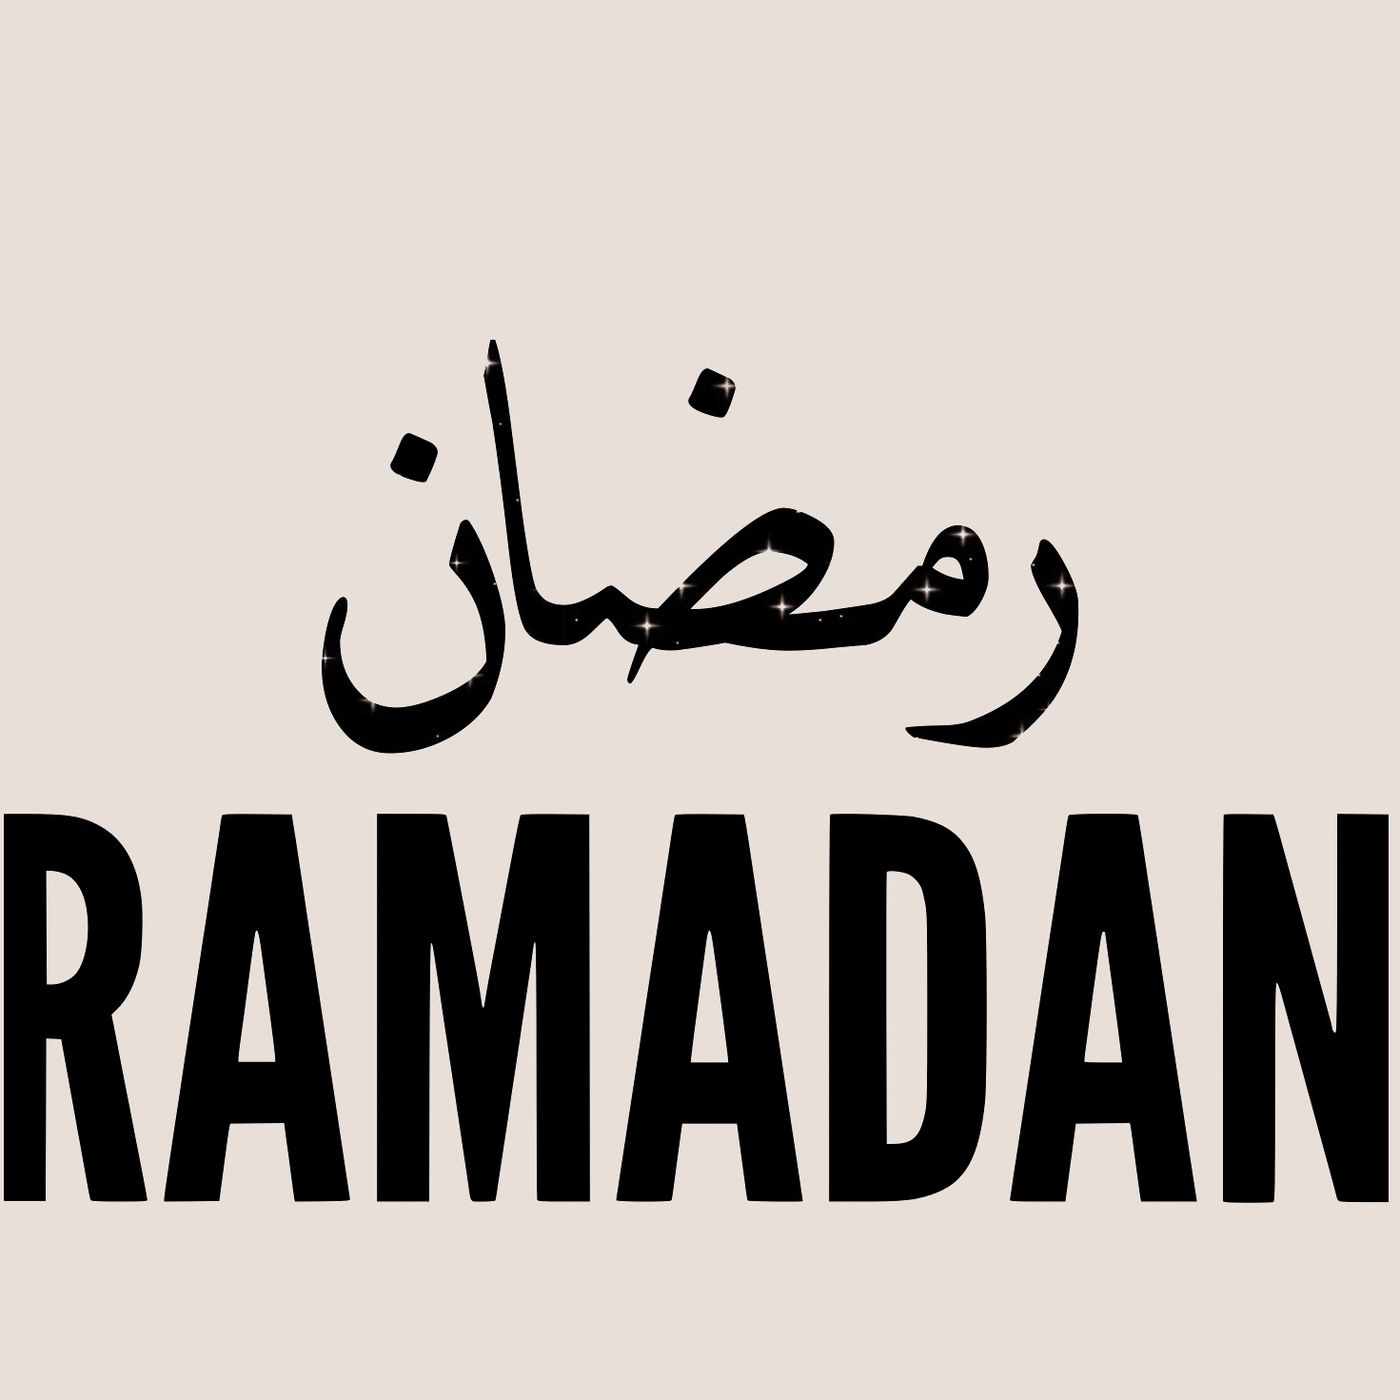 A Reminder on Welcoming Ramadan - Faisal ibn Abdul Qaadir ibn Hassan, Abu Sulaymaan